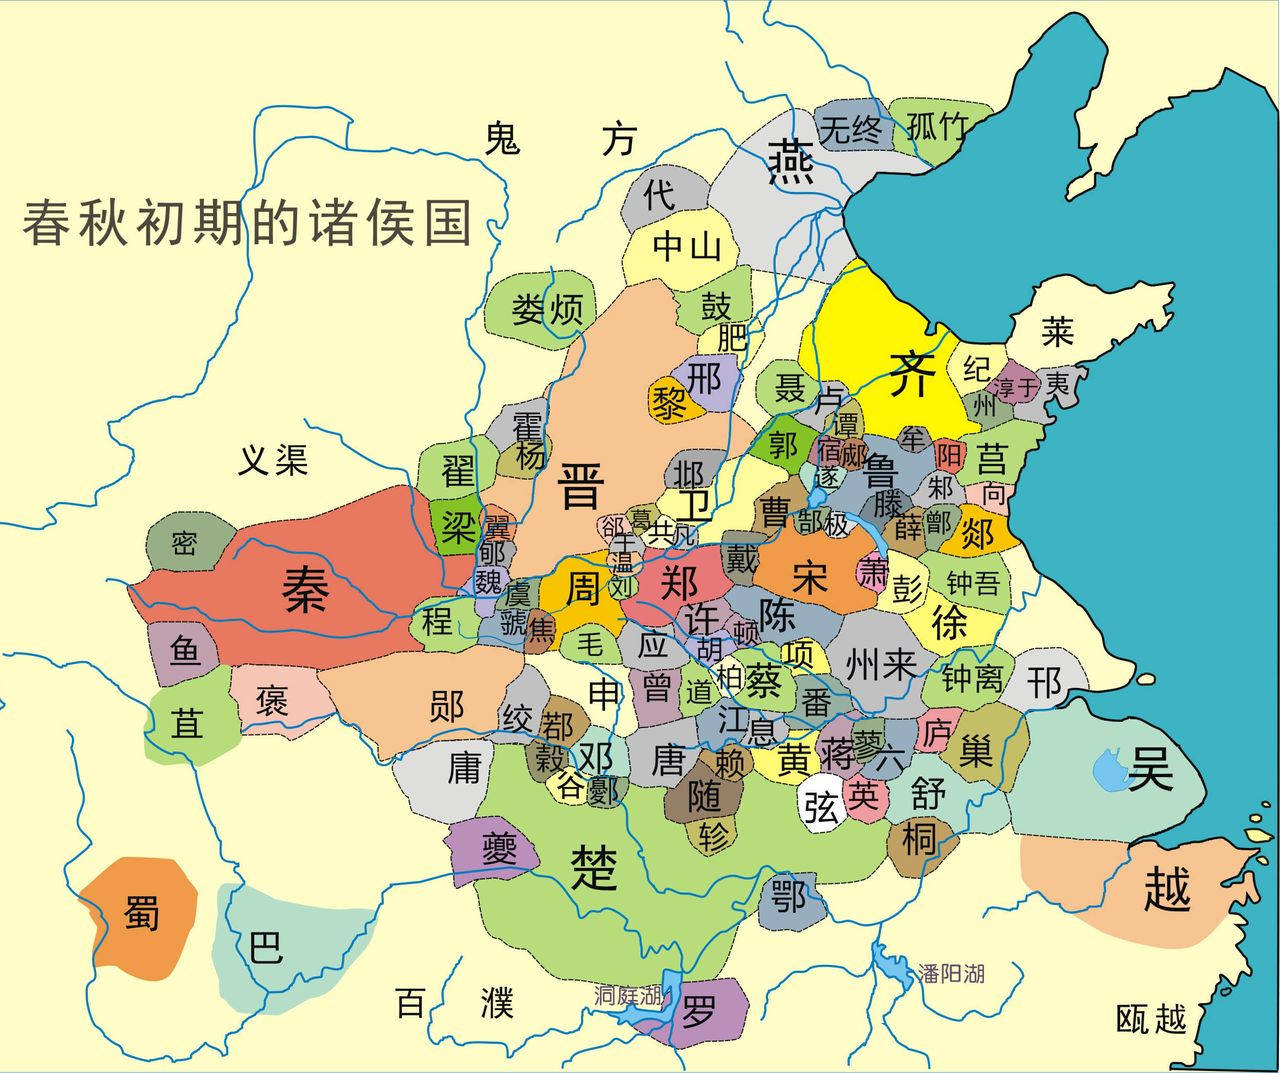 最详细的地图_中国超详细的纺织服装产业分布地图,内衣名镇广东最多